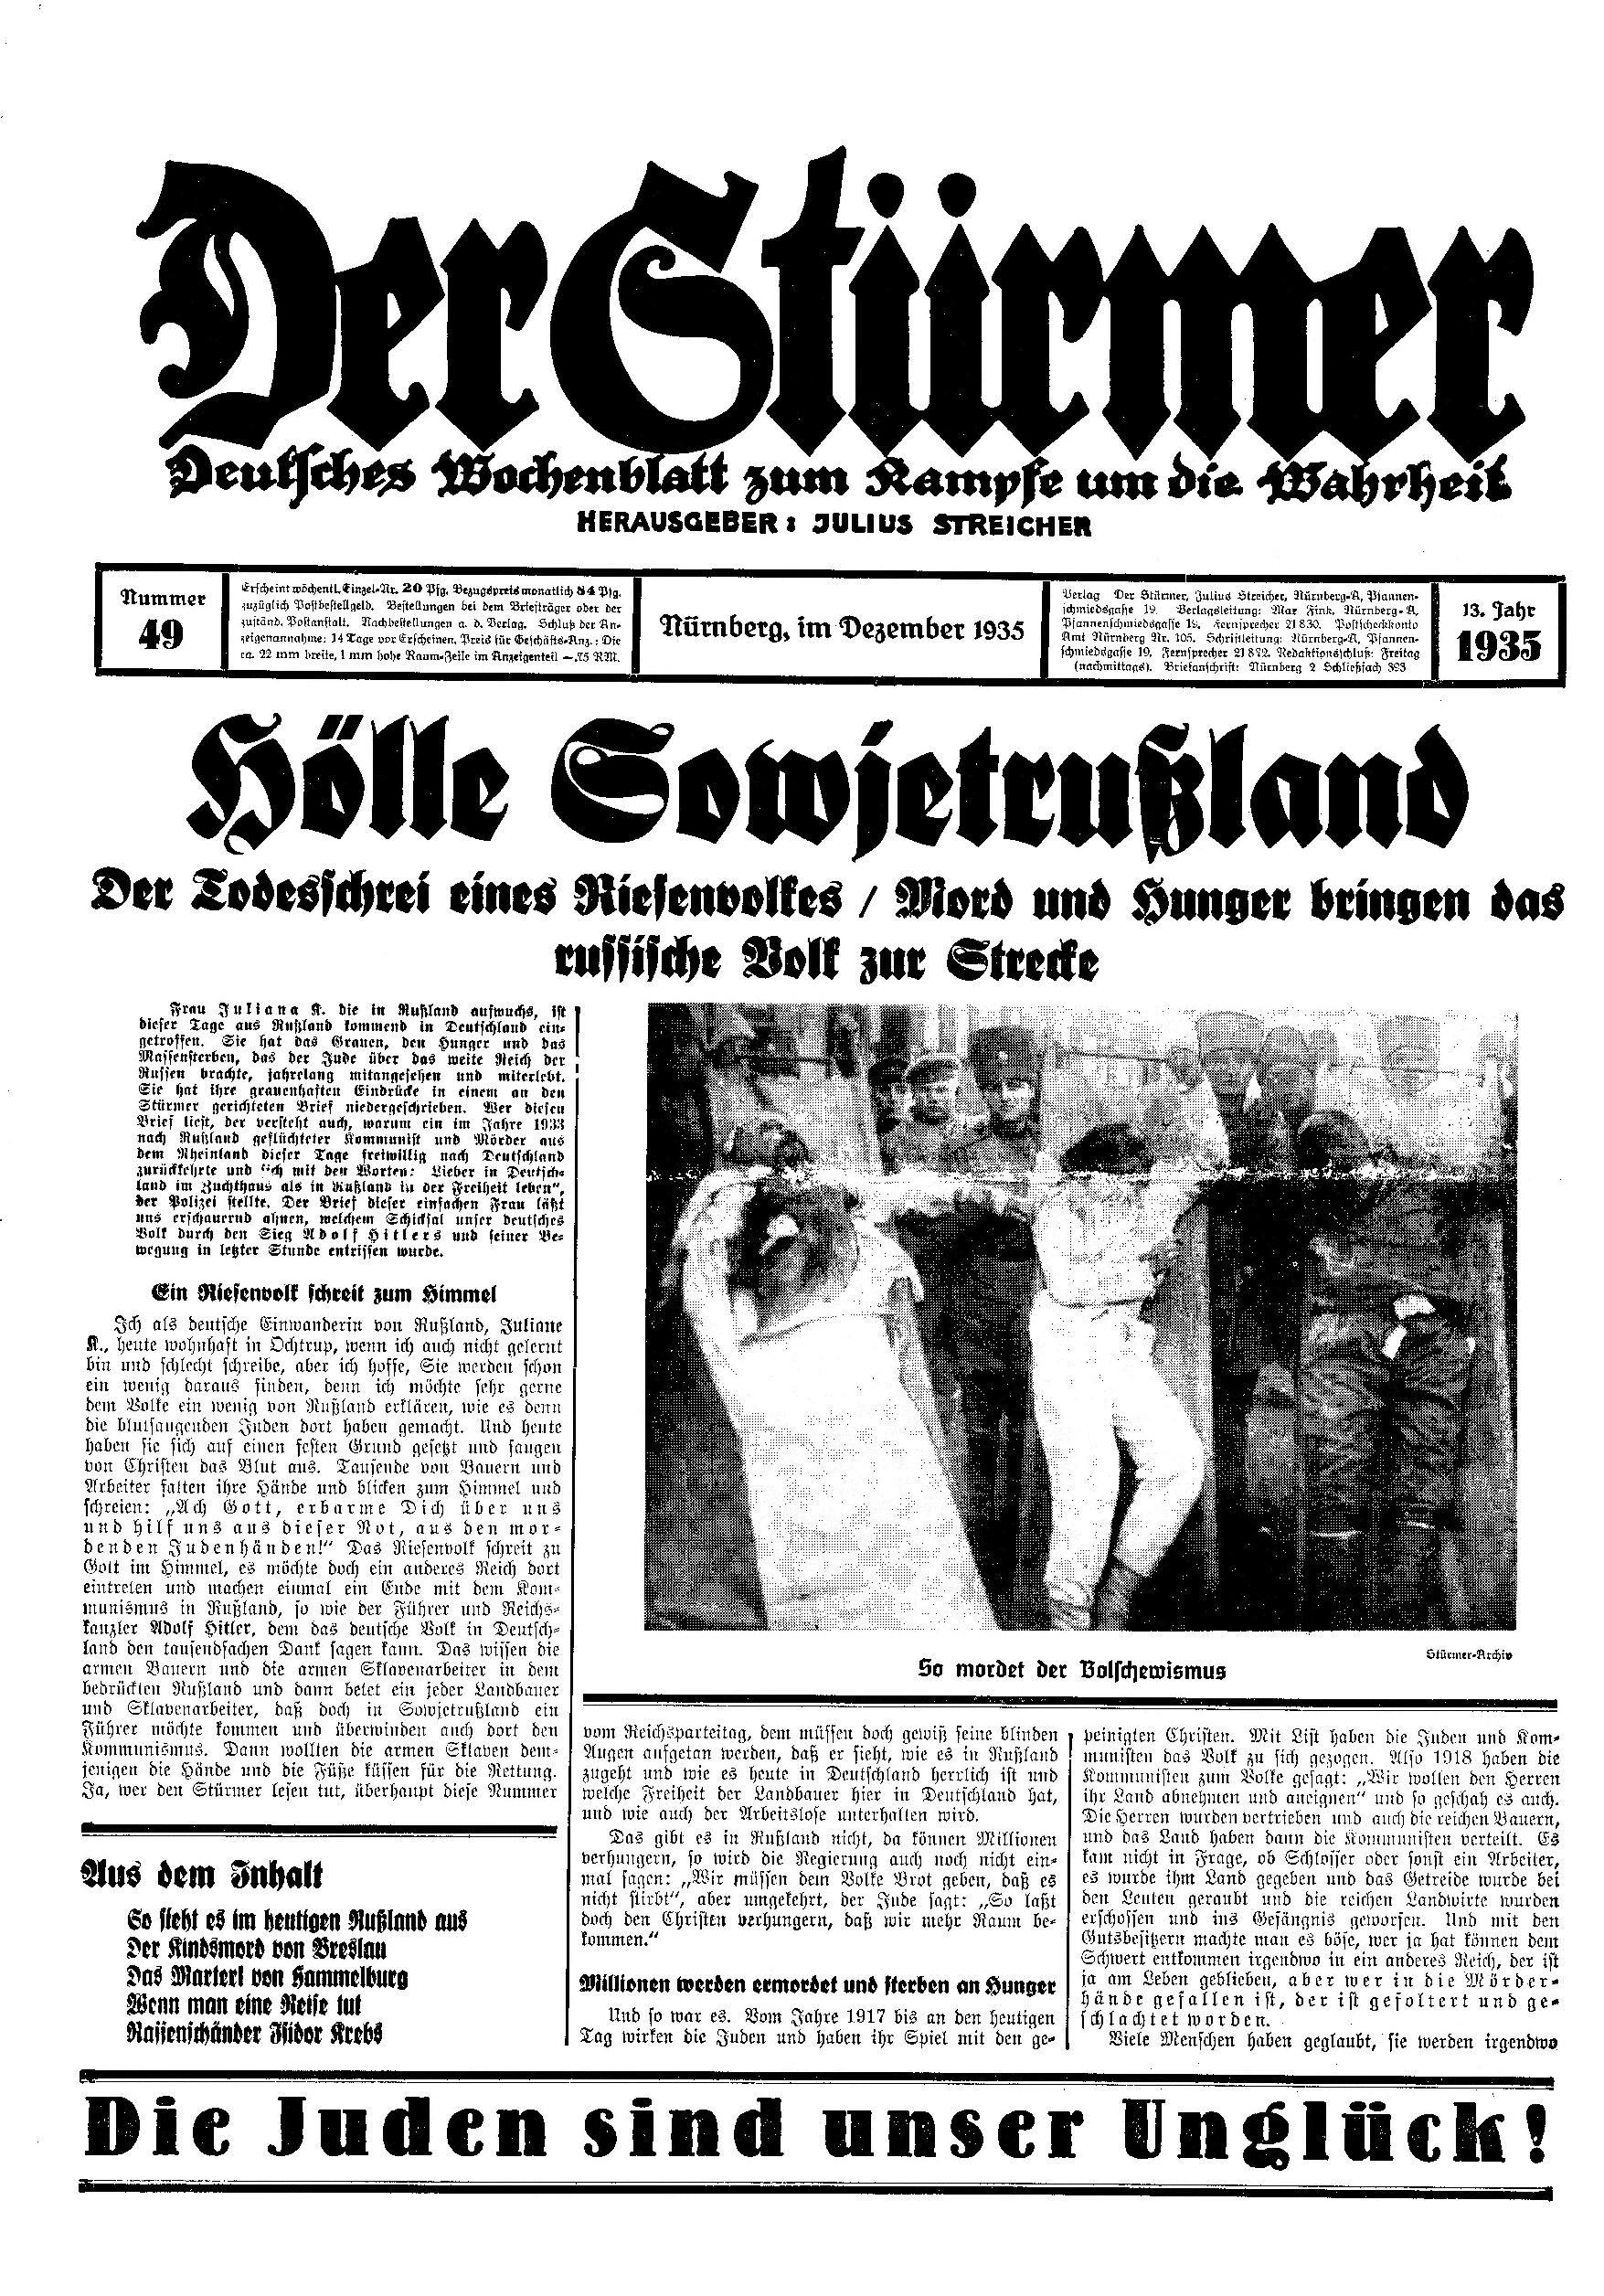 Der Stürmer - 1935 Nr. 49 - Hölle Sowjetrußland